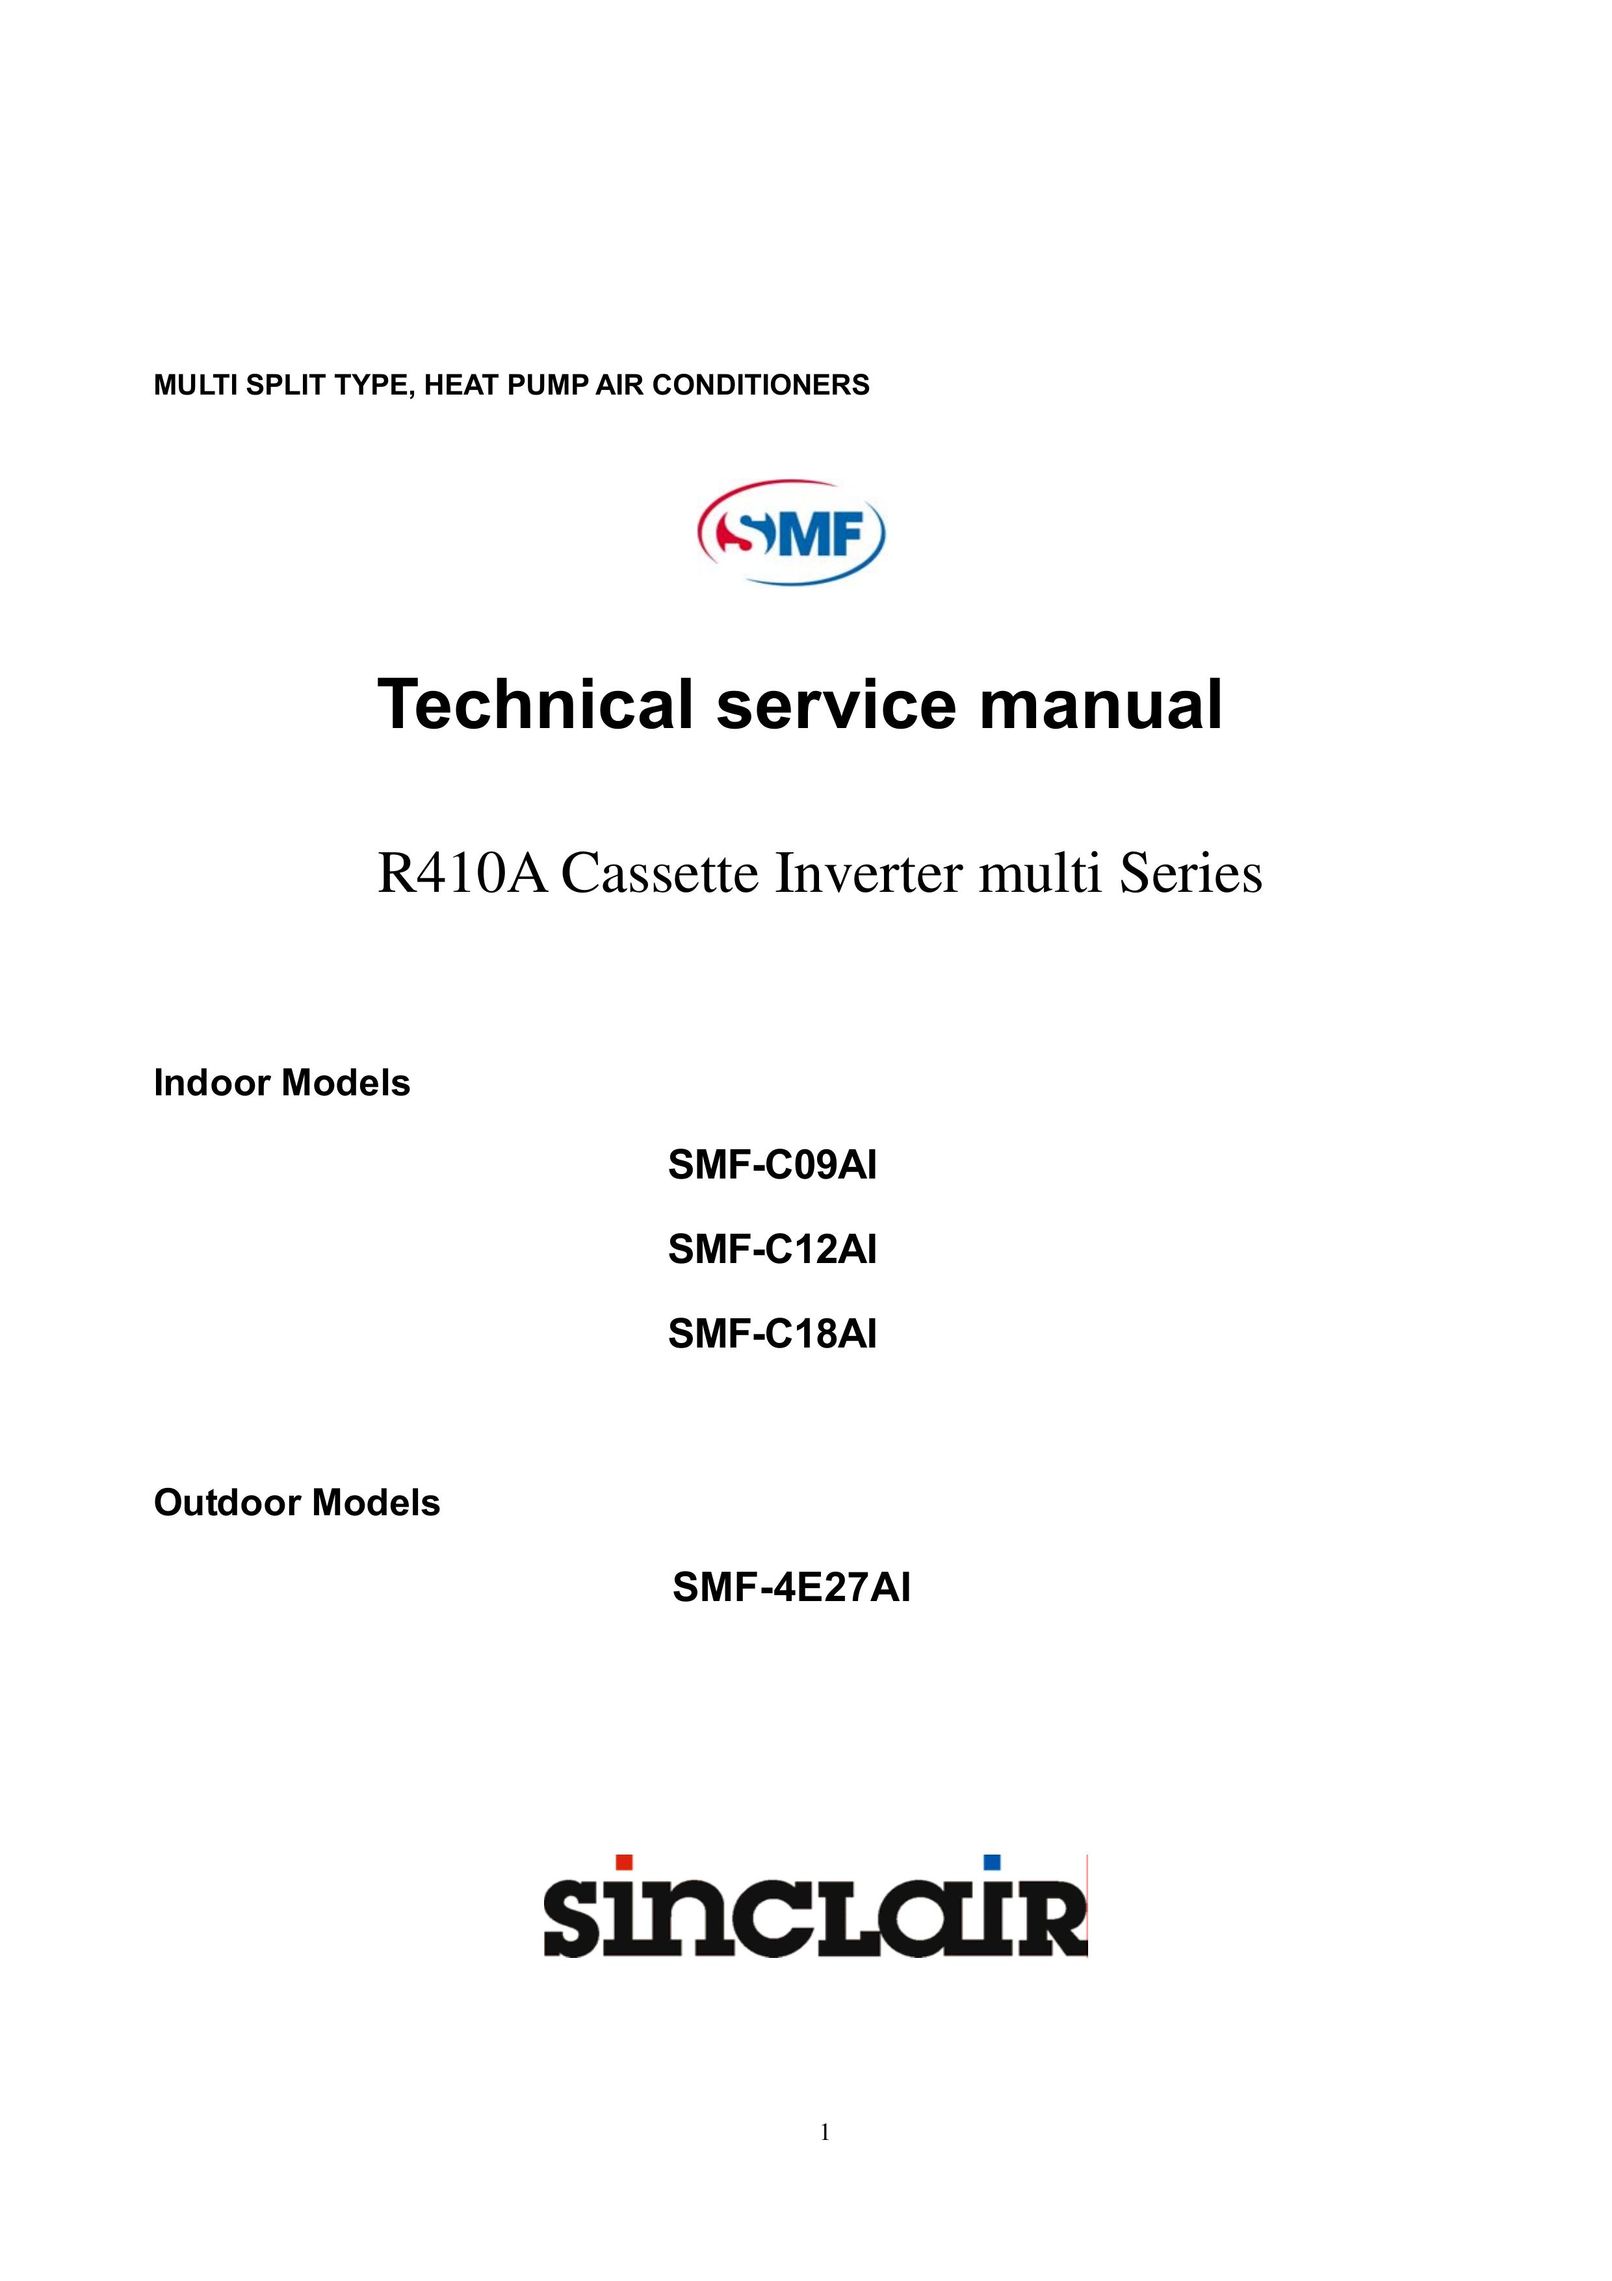 Sinclair SMF-C18AI Air Conditioner User Manual